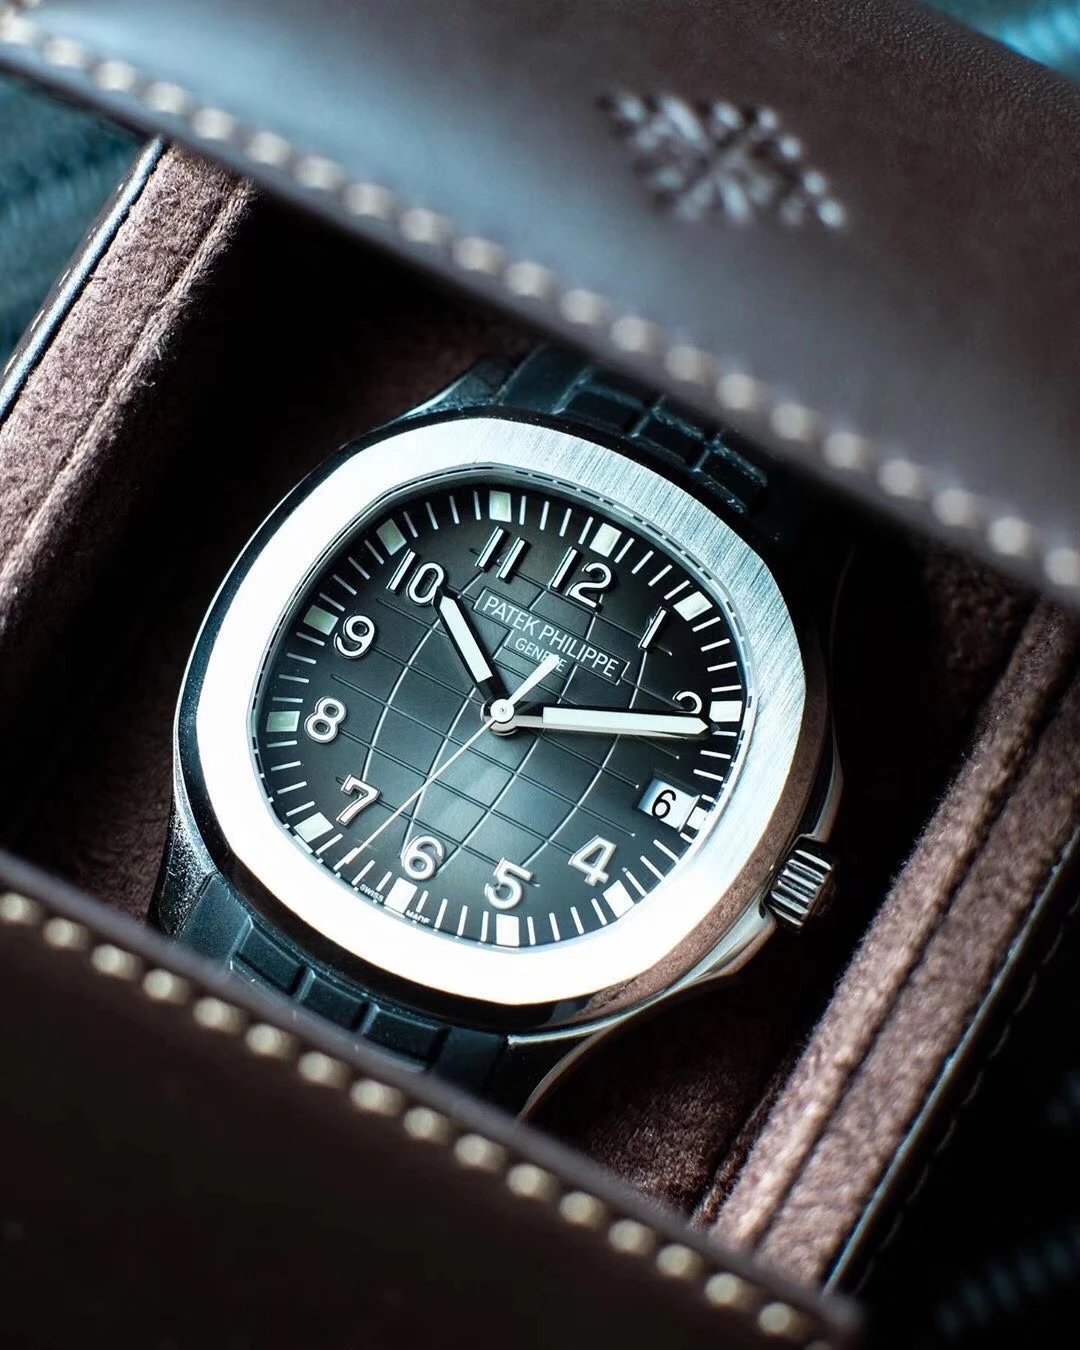 最高版本 秒天神作3K廠百達翡麗手雷5167A-001腕錶 媲美正品的副本￥4380-高仿百達翡麗